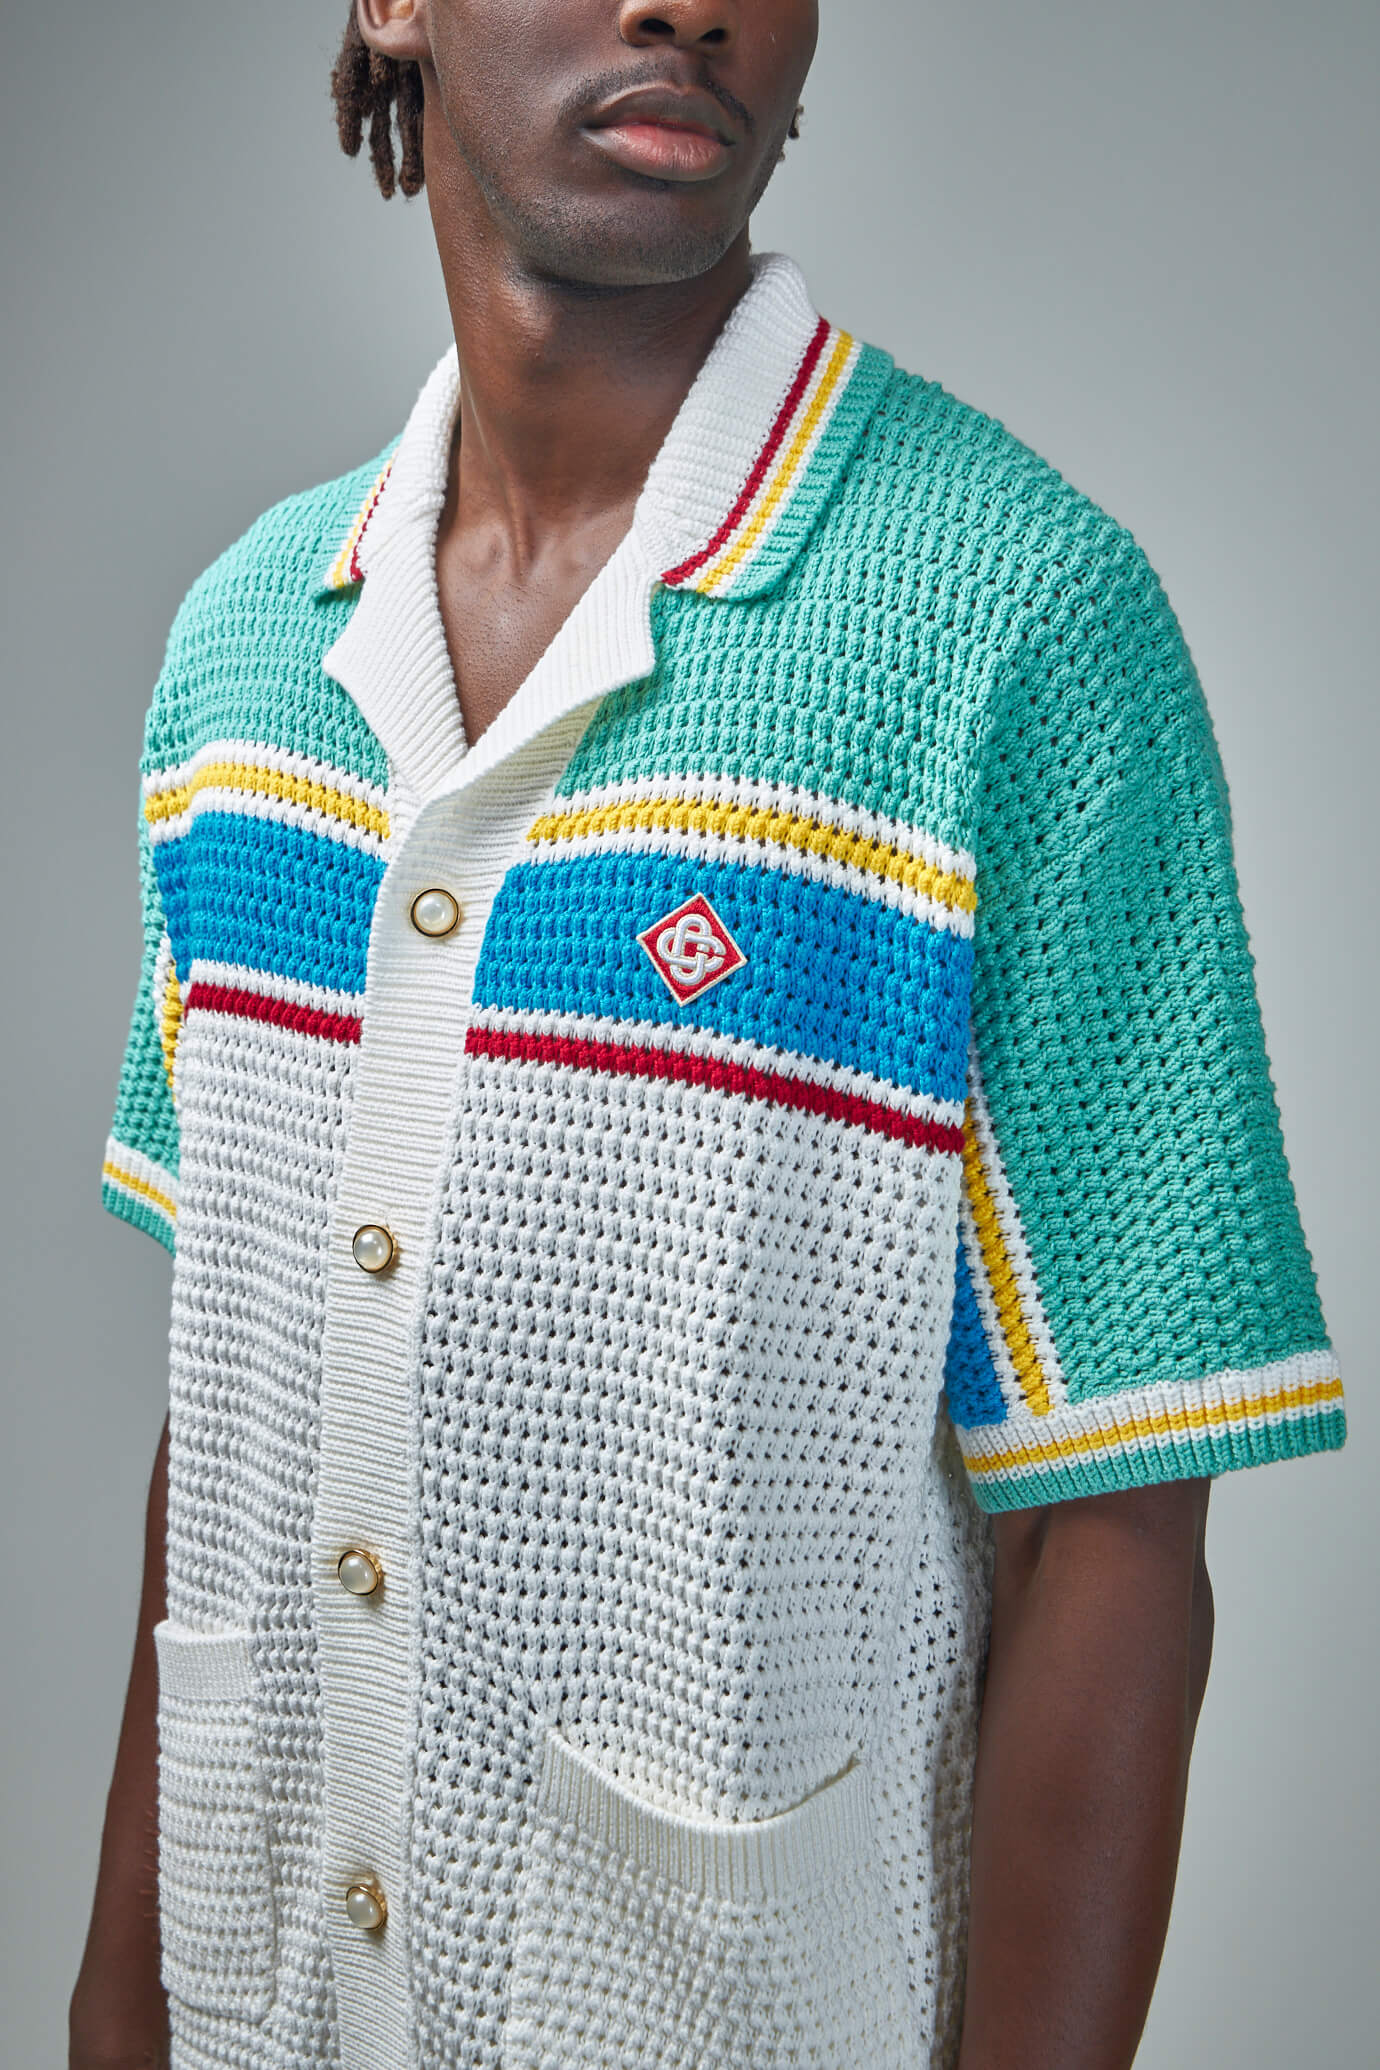 Crochet Tennis Shirt